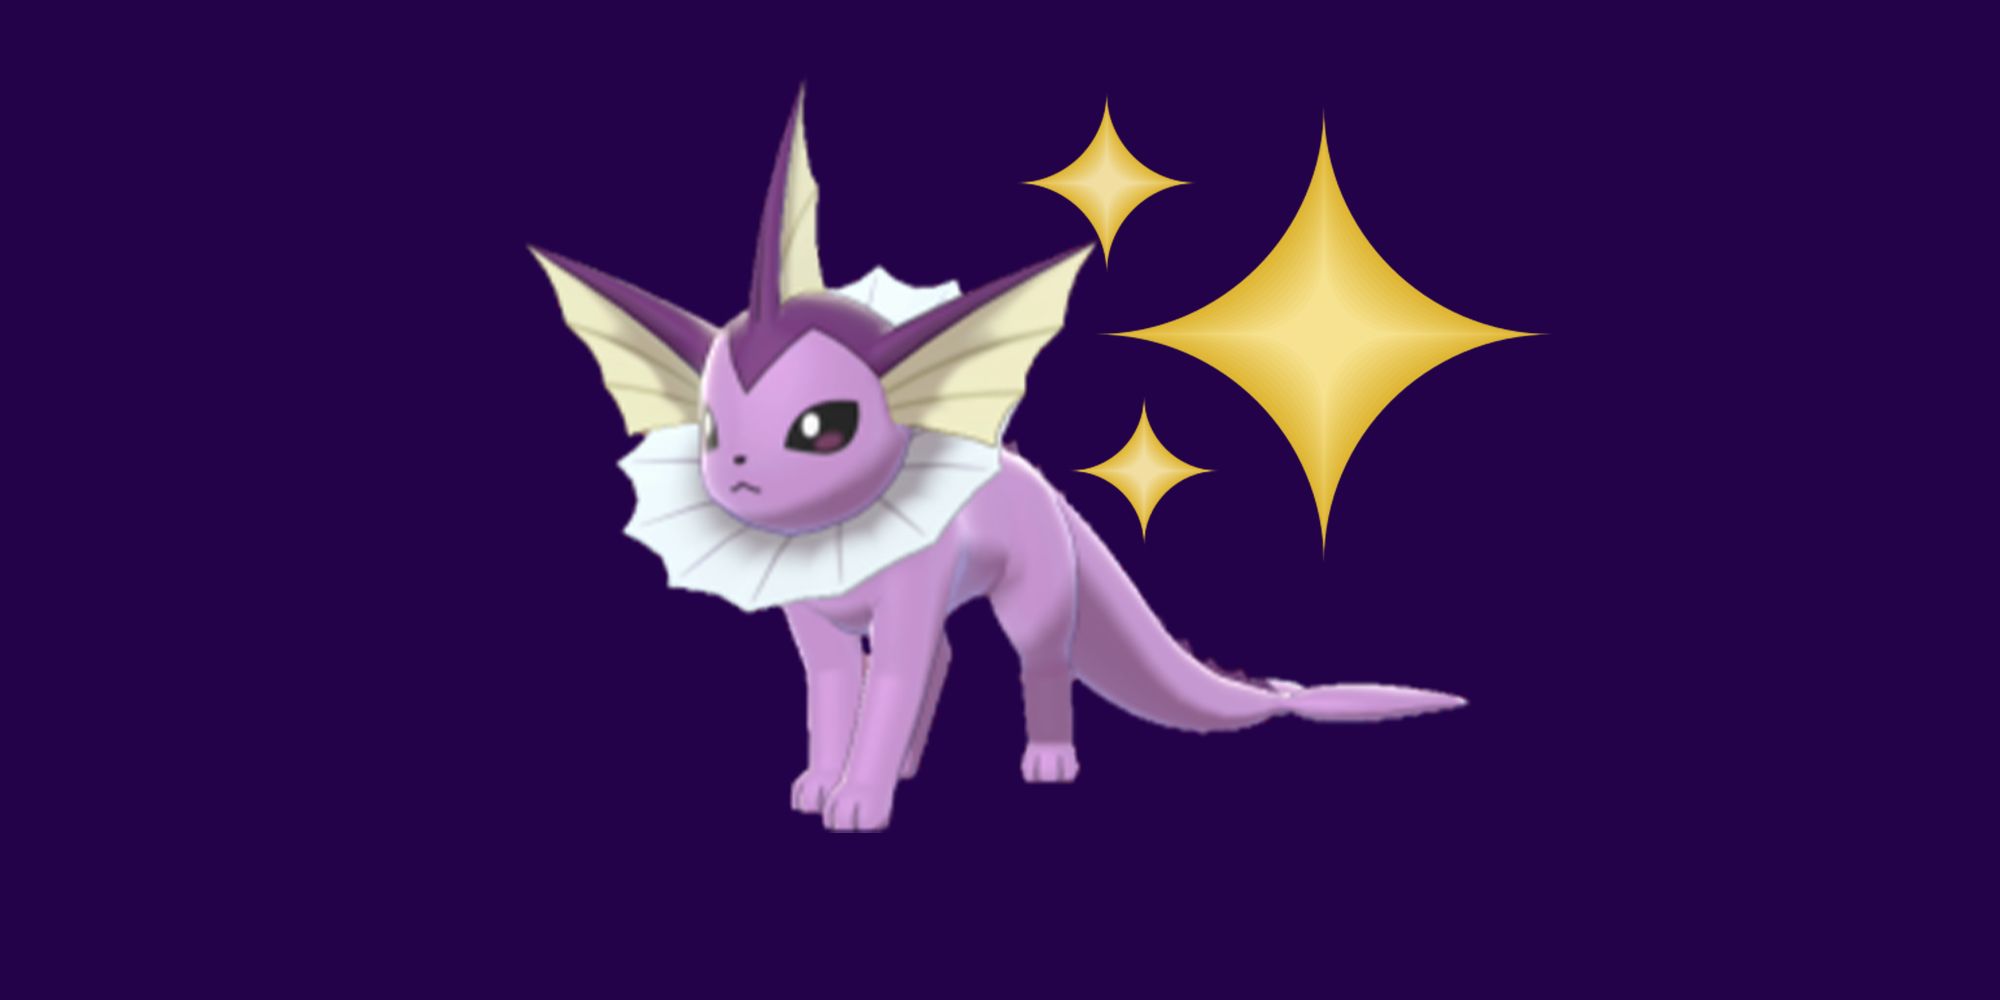 A Shiny Vaporeon as seen in Pokémon Go